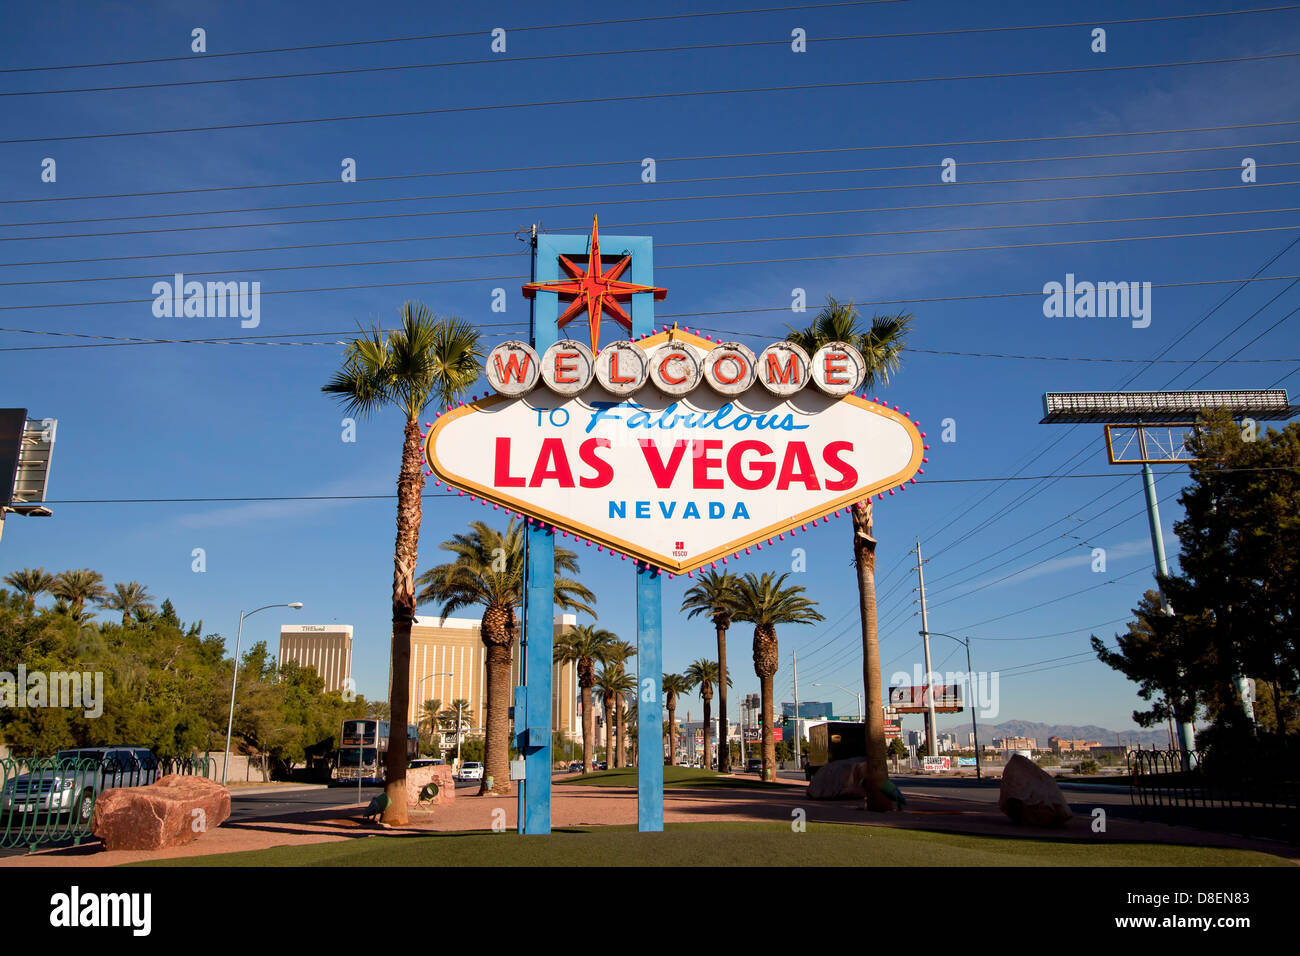 der berühmte melden Sie willkommen im fabelhaften Las Vegas, Nevada in Las Vegas, Nevada, Vereinigte Staaten von Amerika, USA Stockfoto